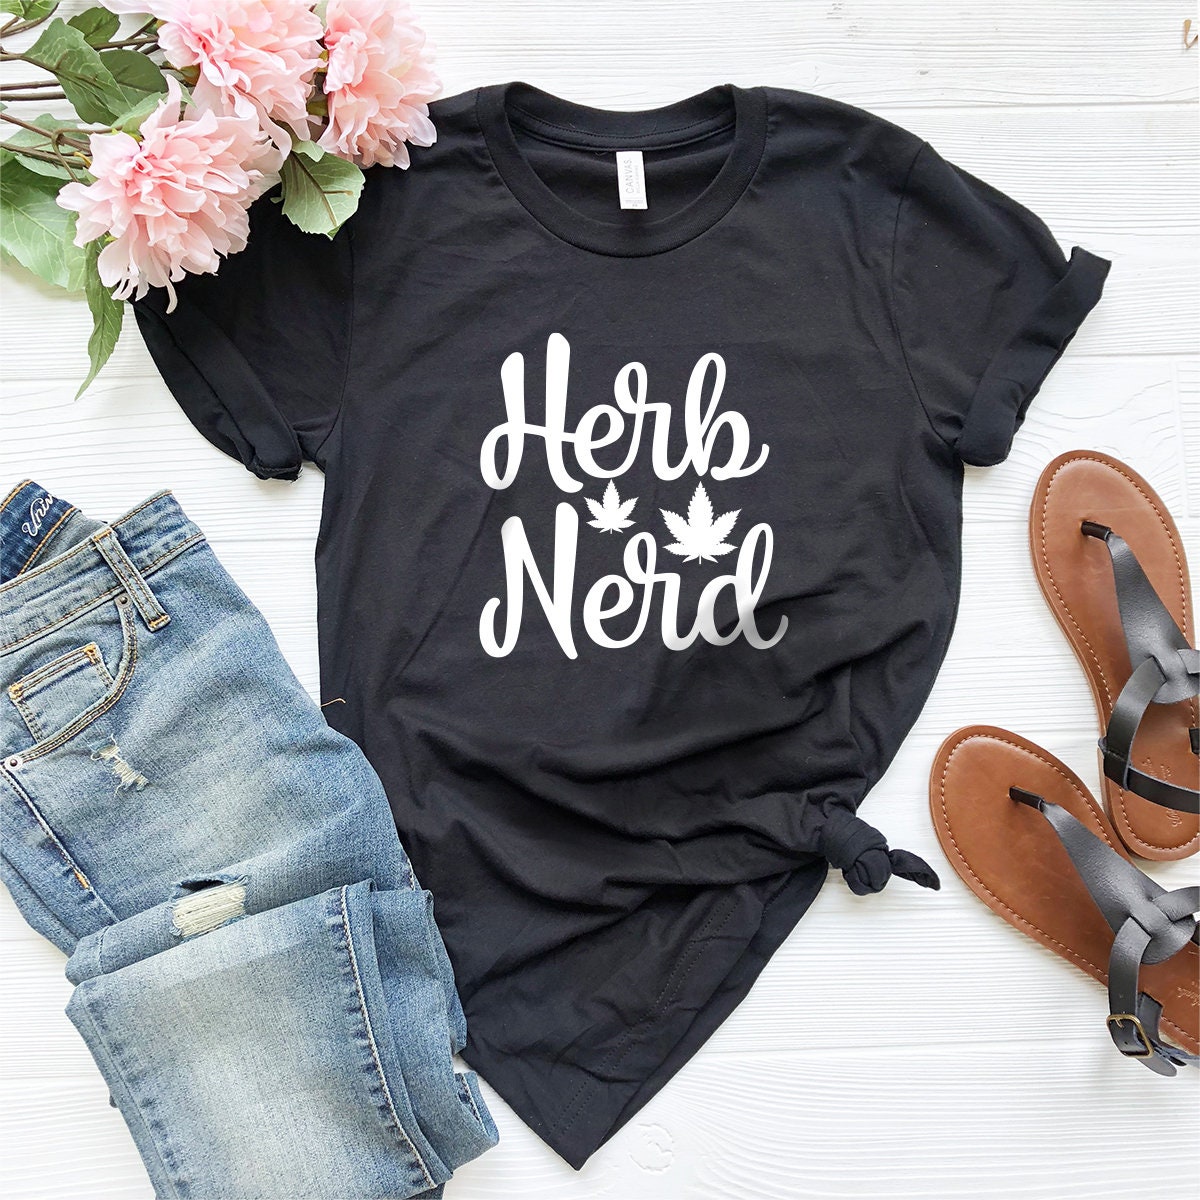 Herb Nerd Shirt, Weed Shirt, Weed T-shirt, Weed Tee, Funny Weed Shirt, Marijuana Shirt, Cannabis Shirt, Weed Lover Shirt, 420-Weed Shirt - Fastdeliverytees.com